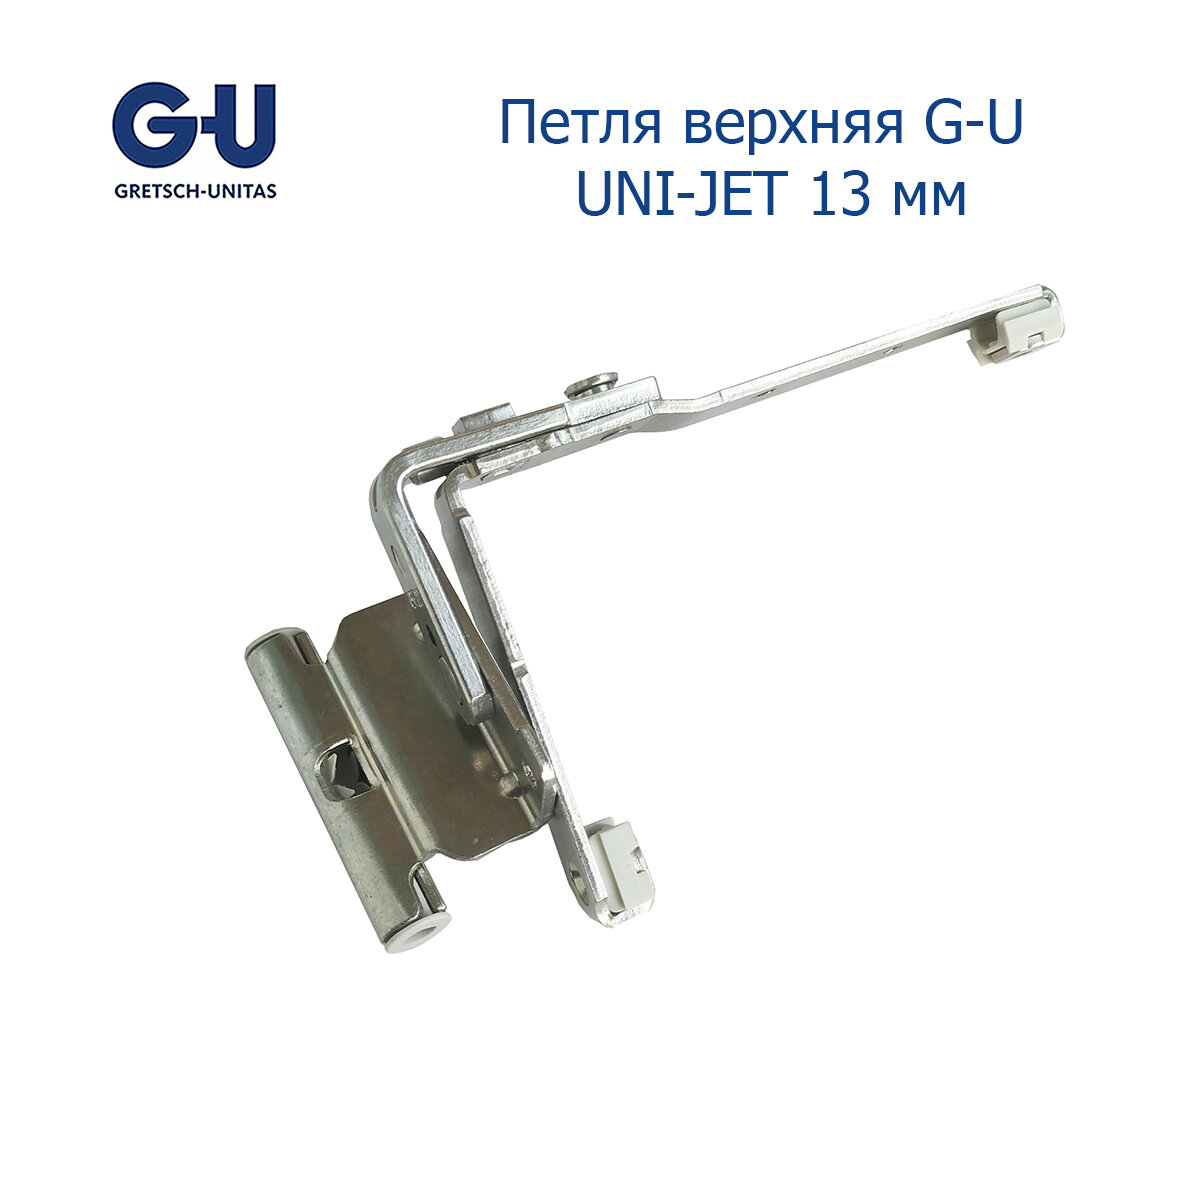 Петля верхняя G-U UNI-JET 13 мм